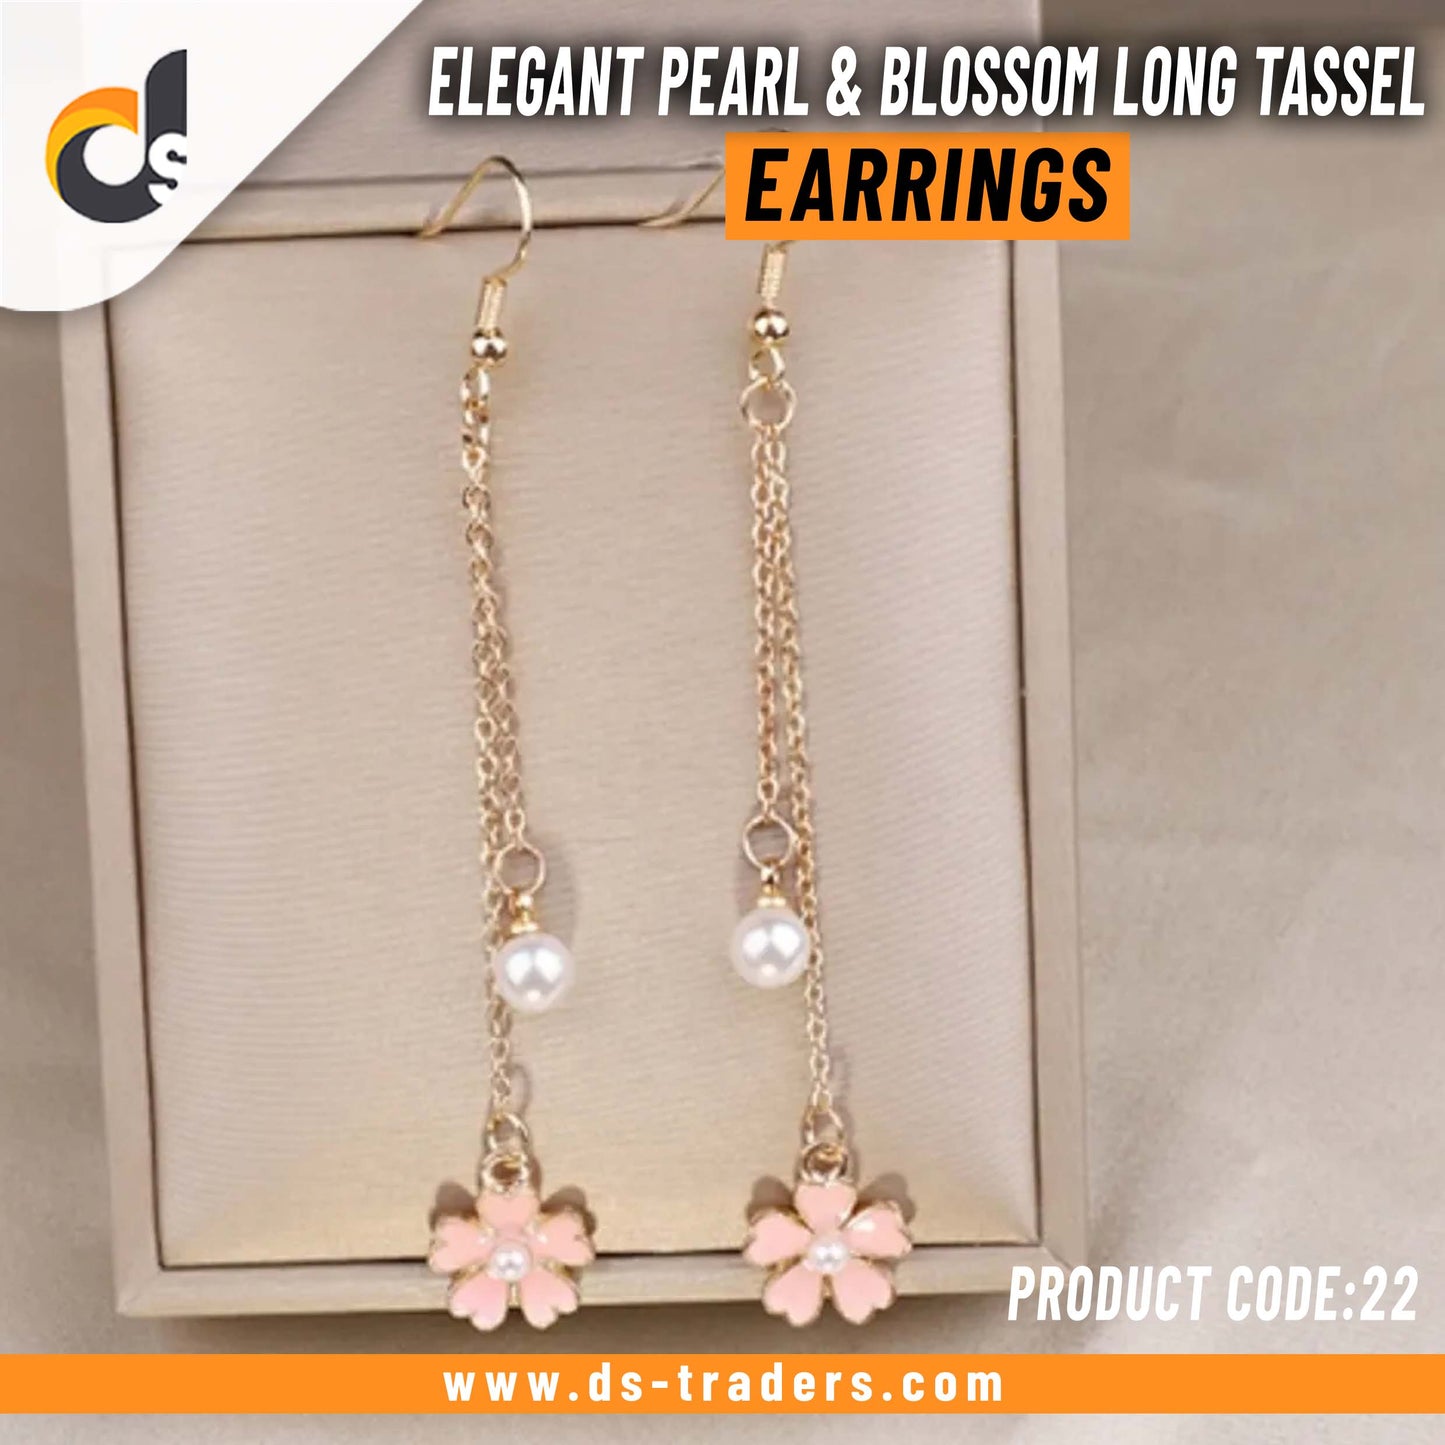 Elegant Pearl & Blossom Long Tassel Earrings